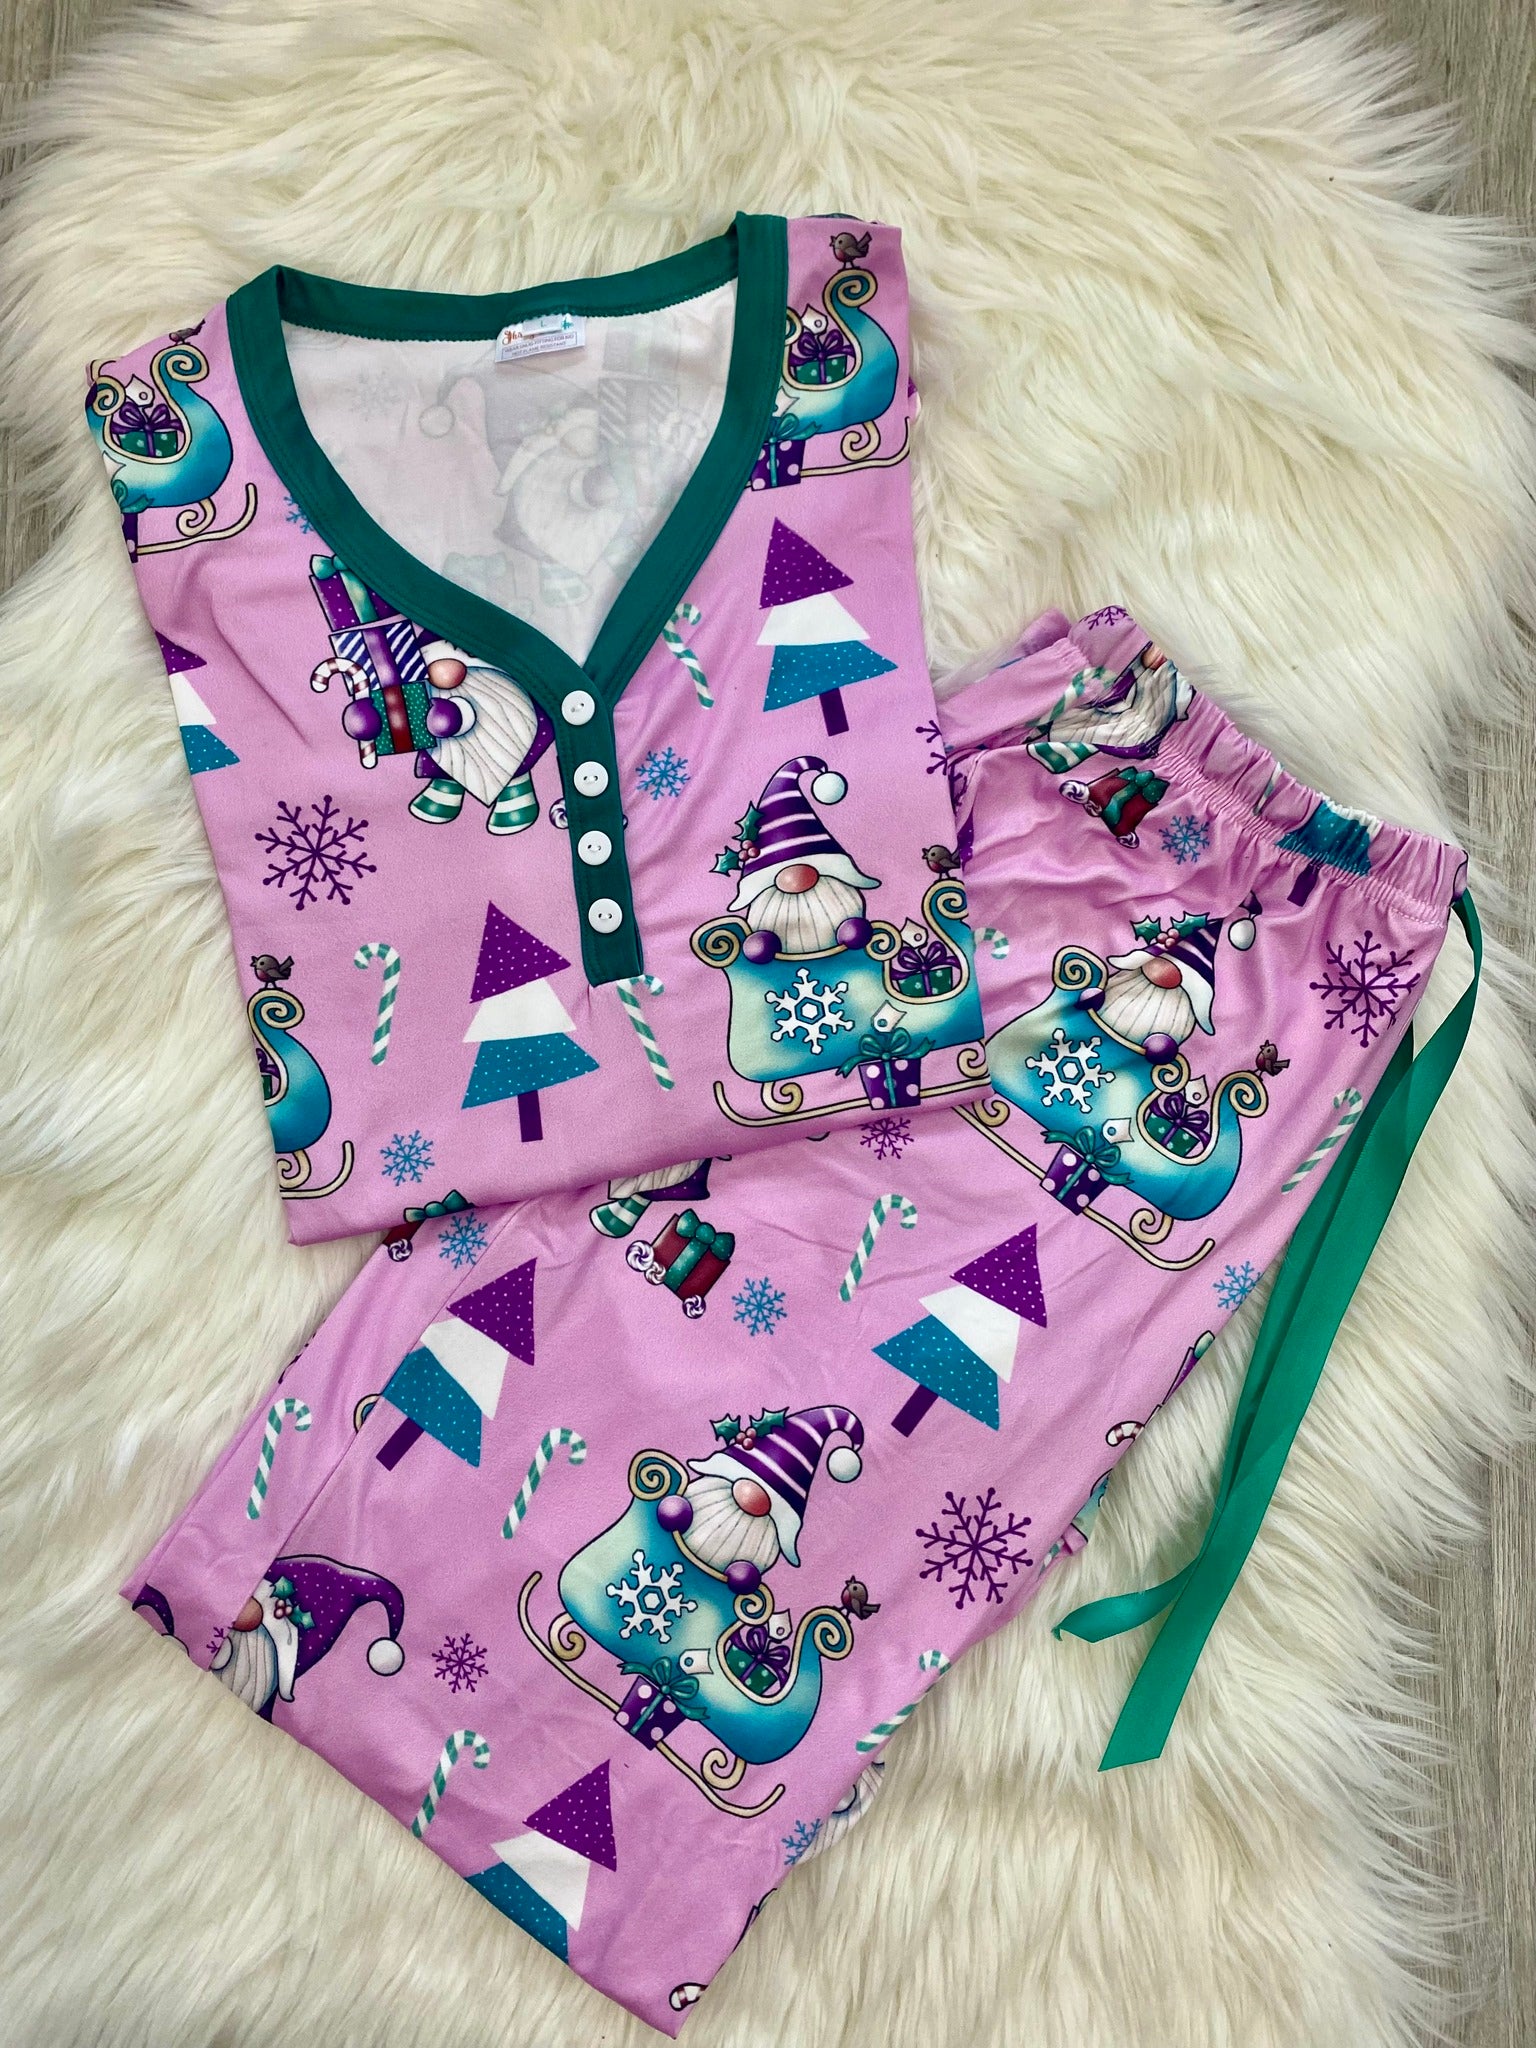 Christmas pajama set